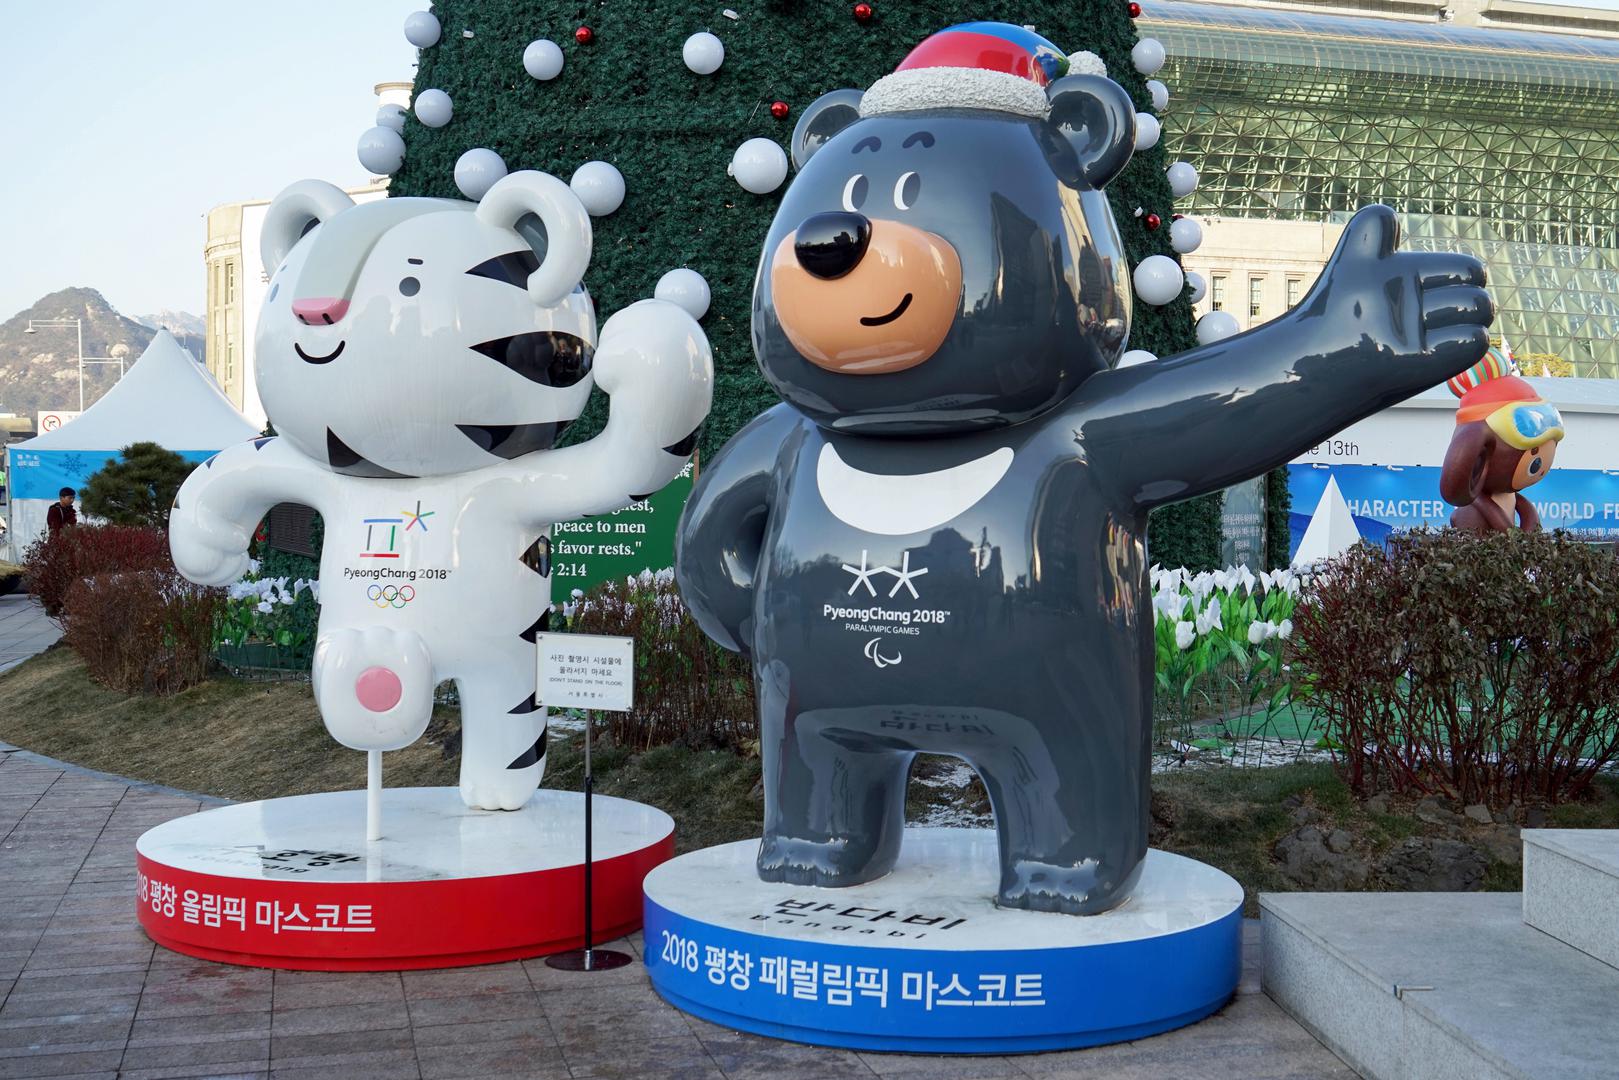 Bandabi azijski crni medvjed koji je nastanjen na korejskom poluotoku, simbol je snažne volje i hrabrosti. To je maskota Zimskih paraolimpijskih igara koje će se također održati u Pjongčangu